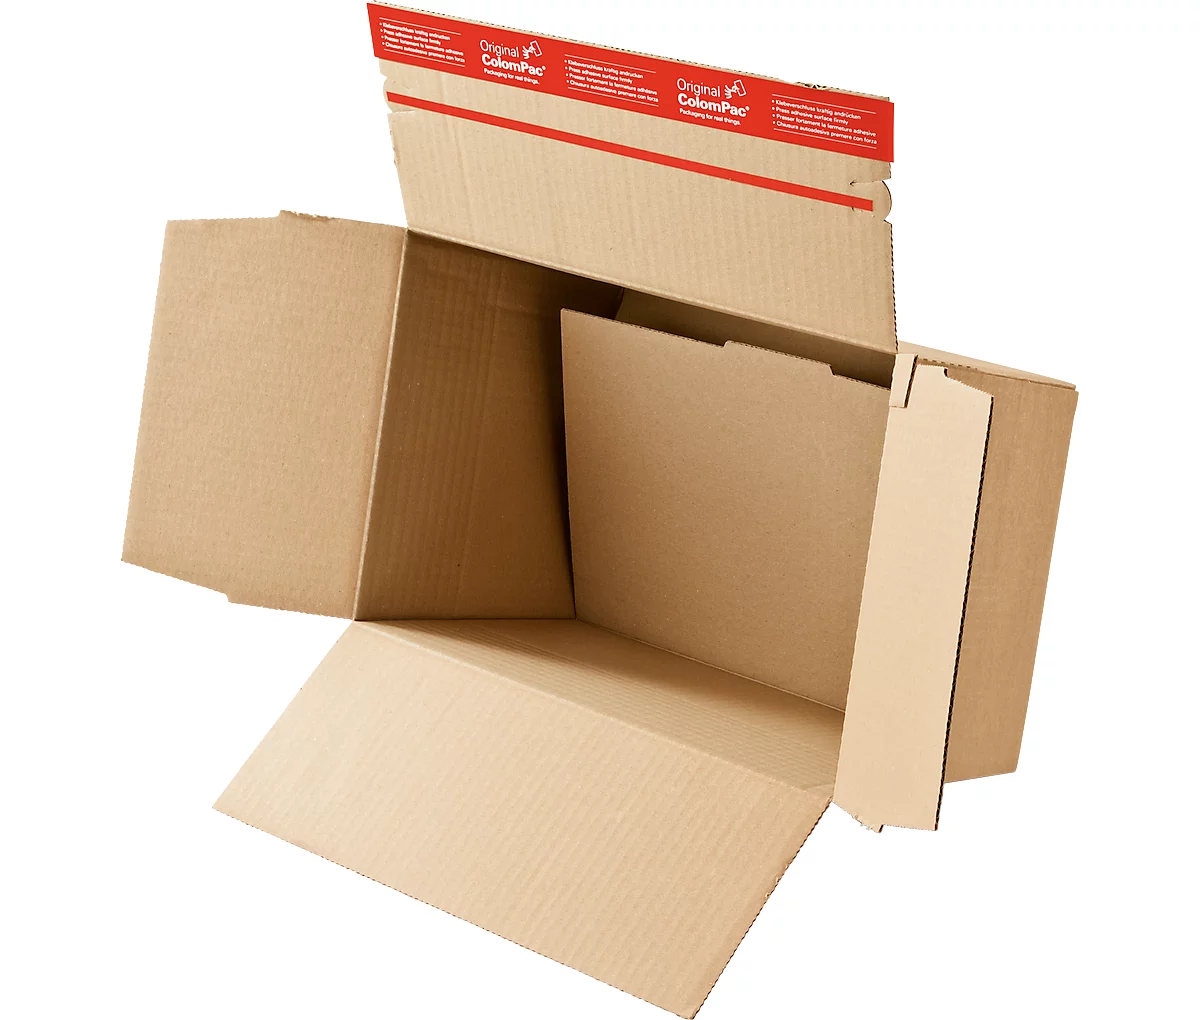 Caja de cartón de plegado rápido DIN A5, doble fondo, cierre autoadhesivo, marrón, 10 unidades